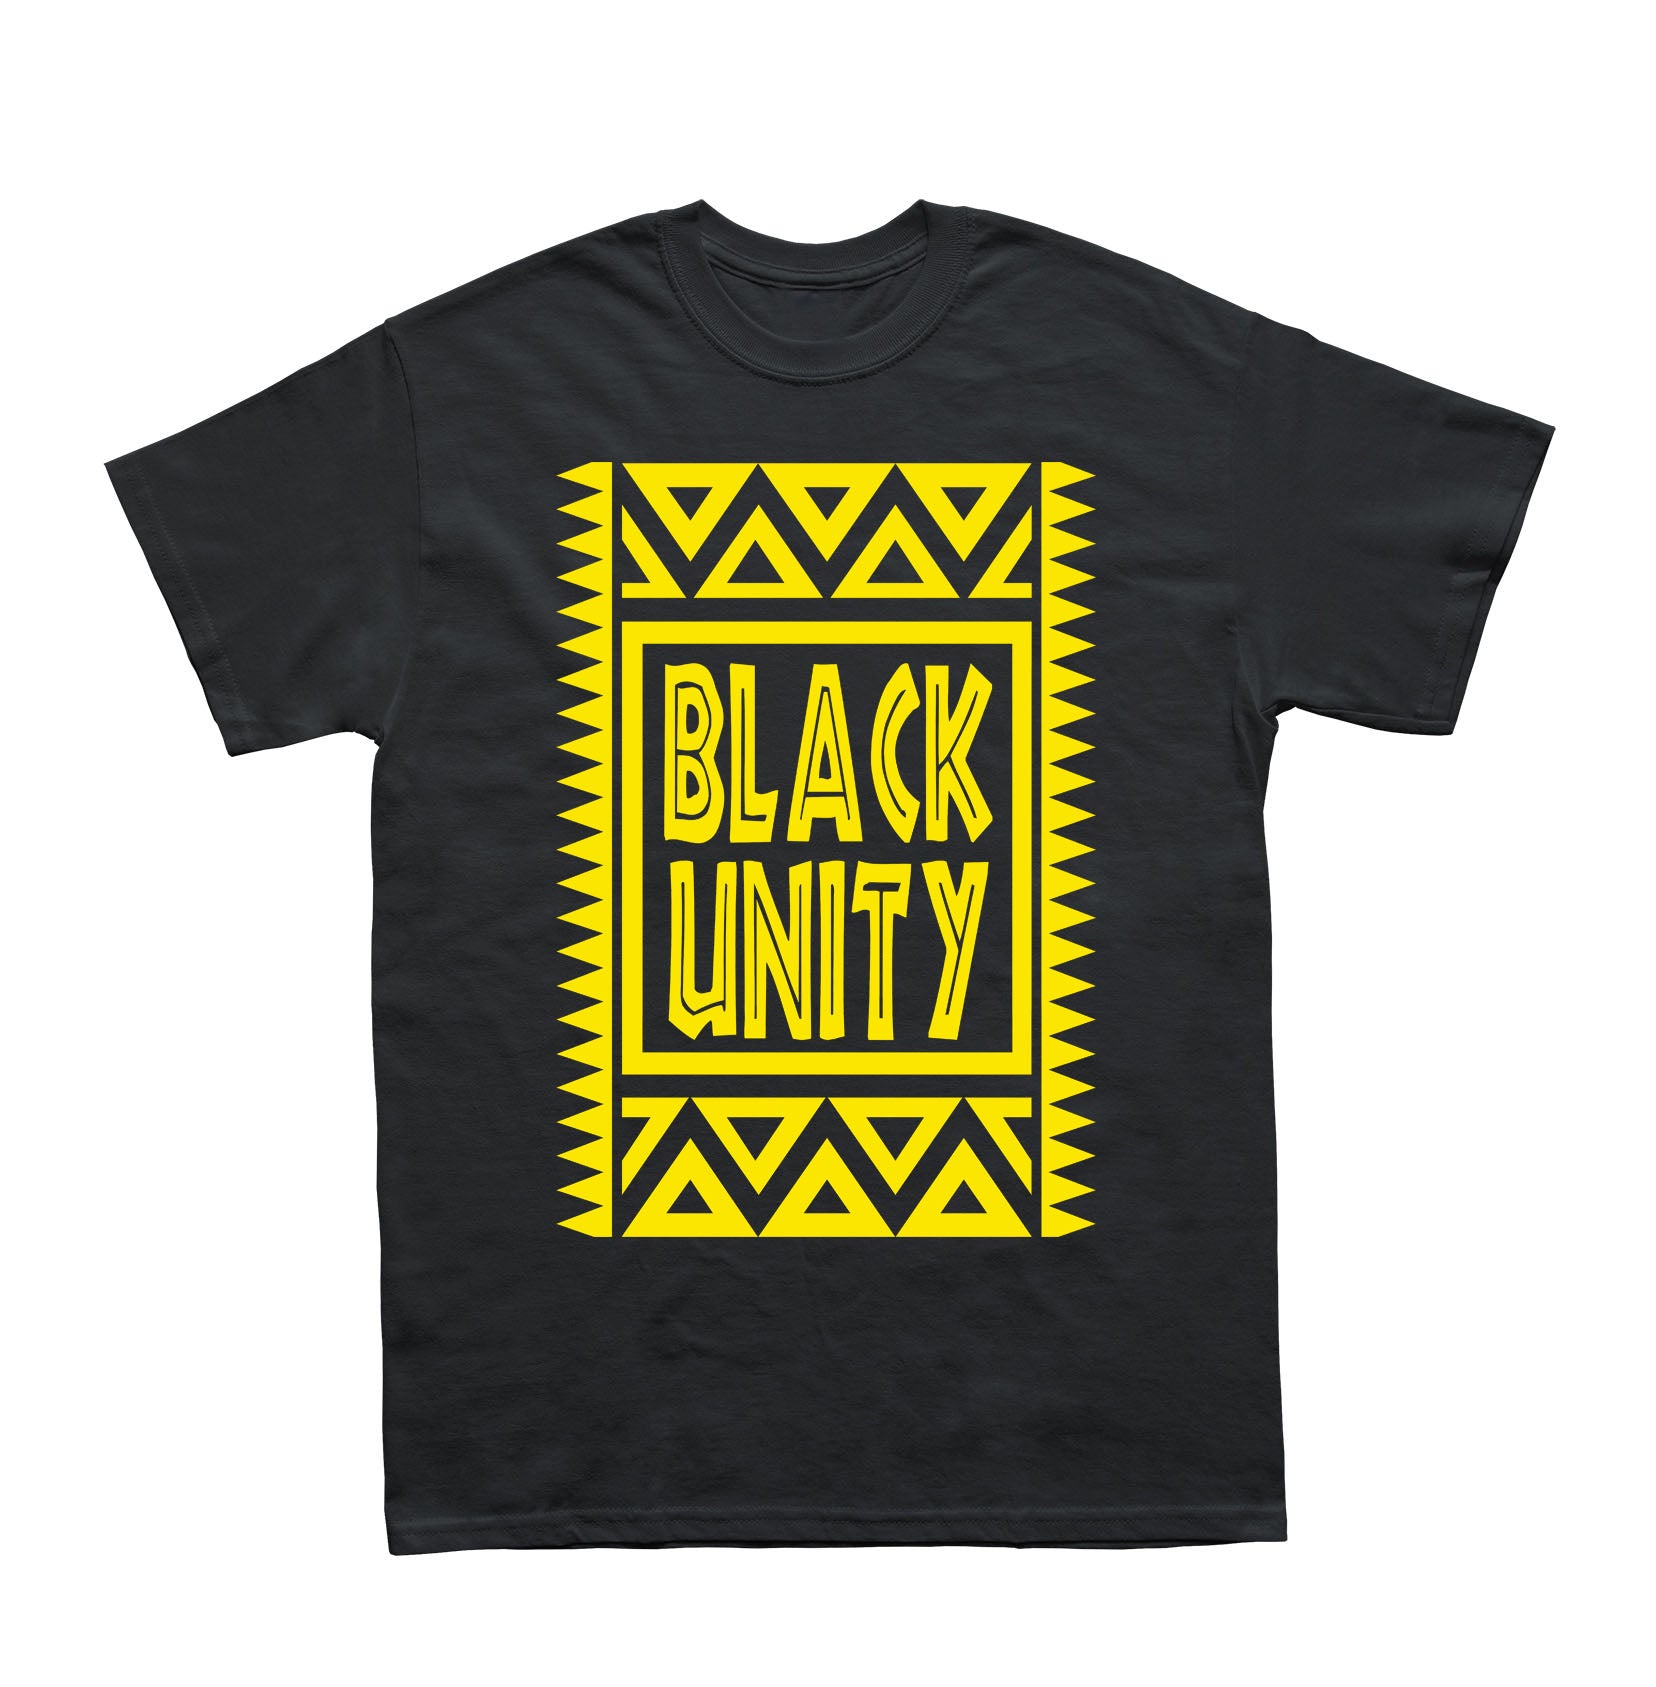 Tribal Black Unity Shirt - Black10.com